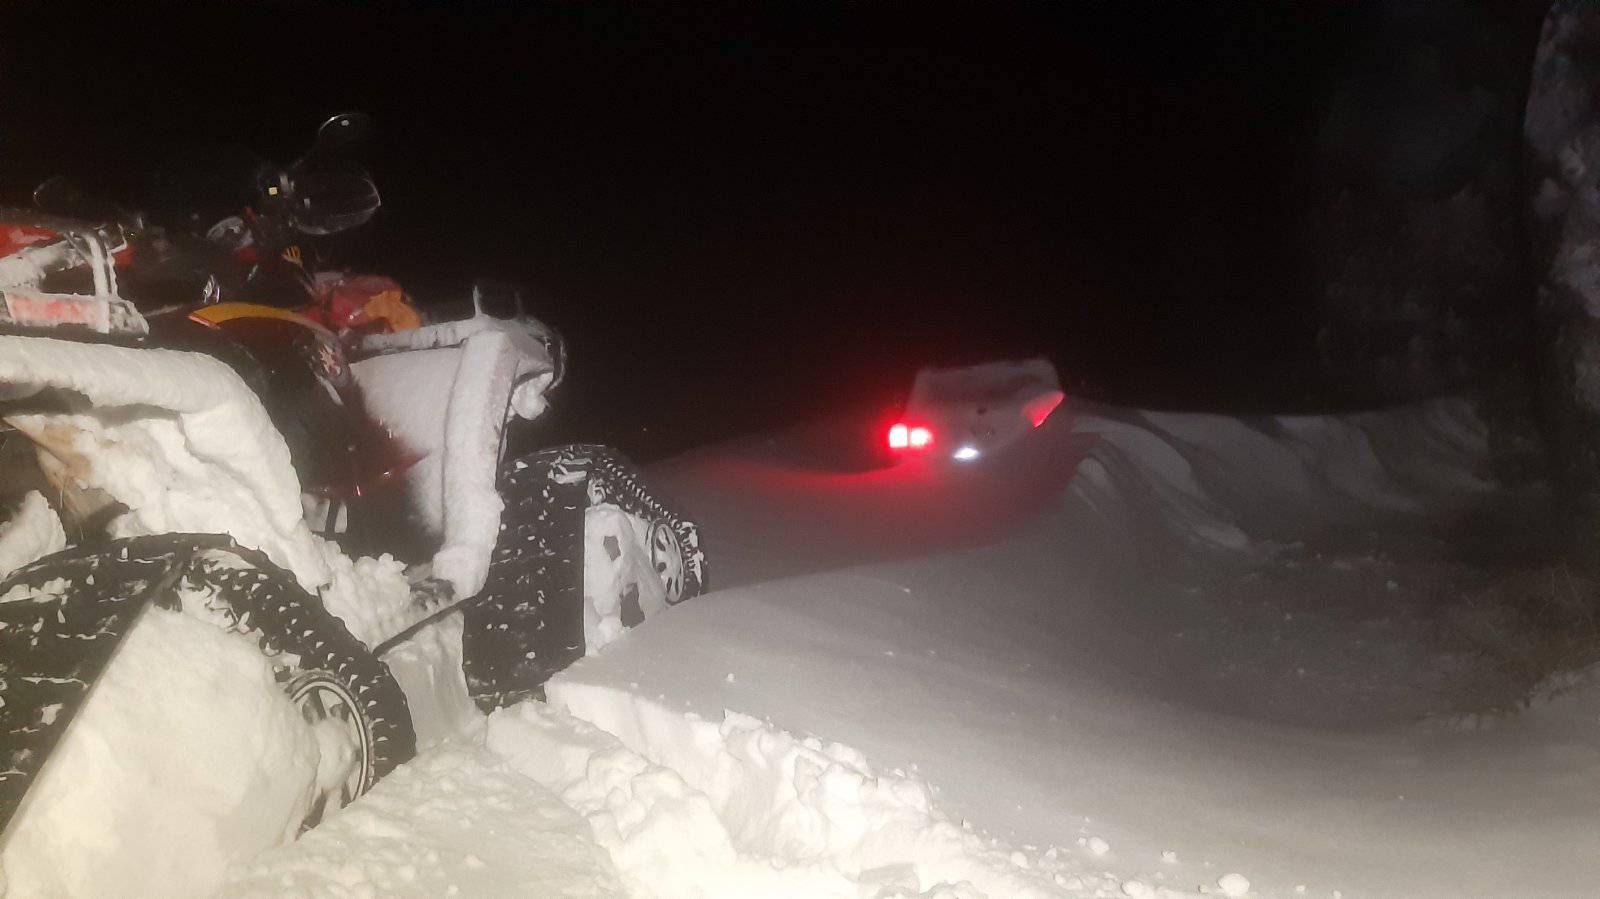 Išli autom u 'đir' po mećavi na Velebit, spasio ih HGSS: 'Auto će izvući tek kad snijeg okopni'